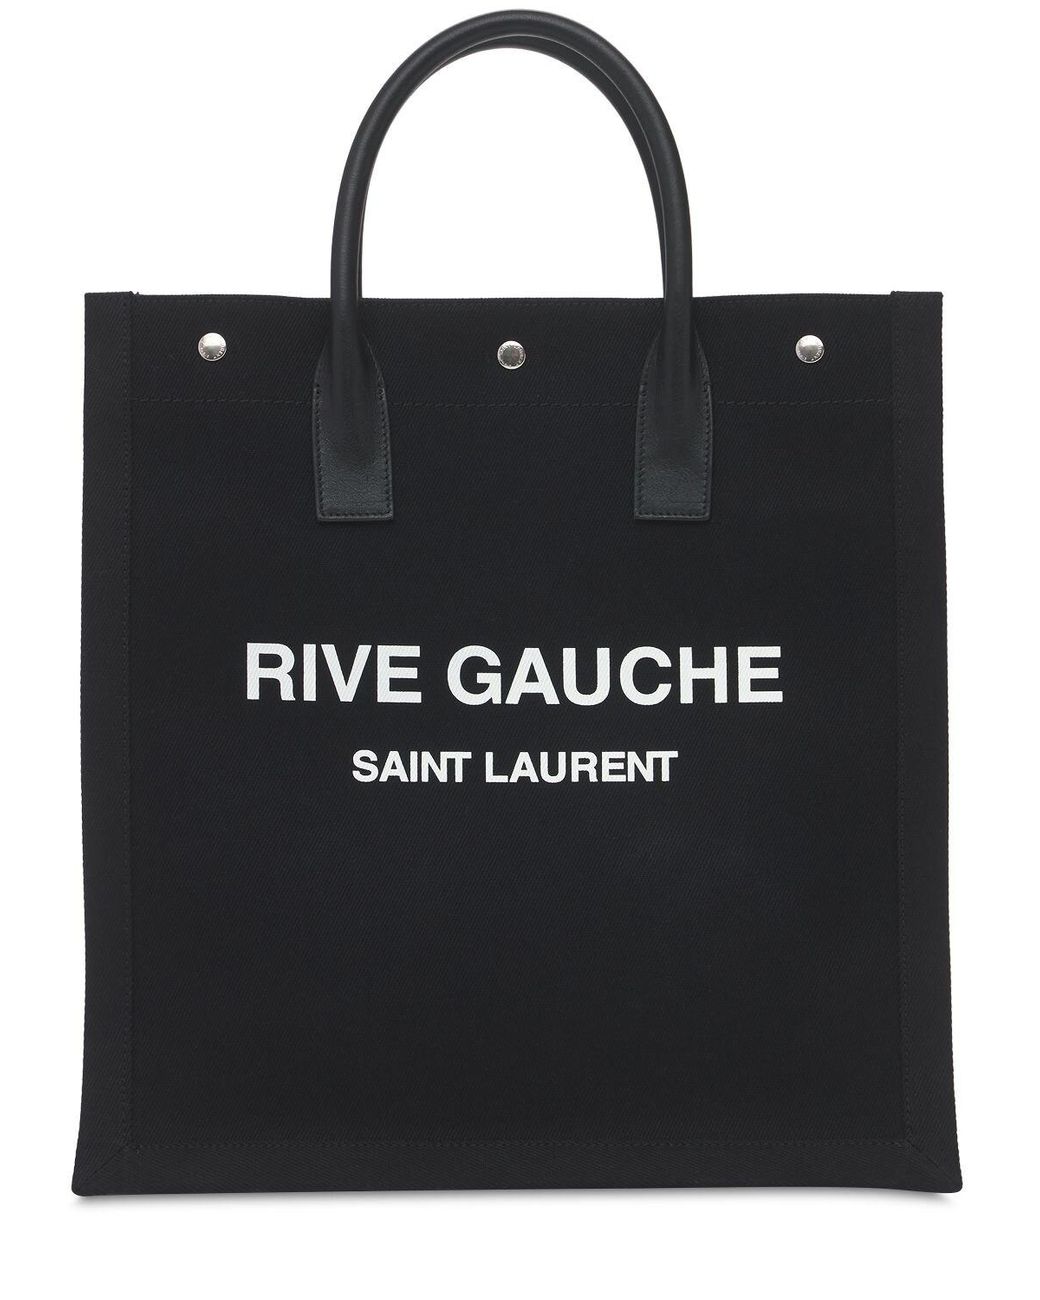 Saint Laurent Rive Gauche Cotton Canvas Tote Bag in Black - Lyst